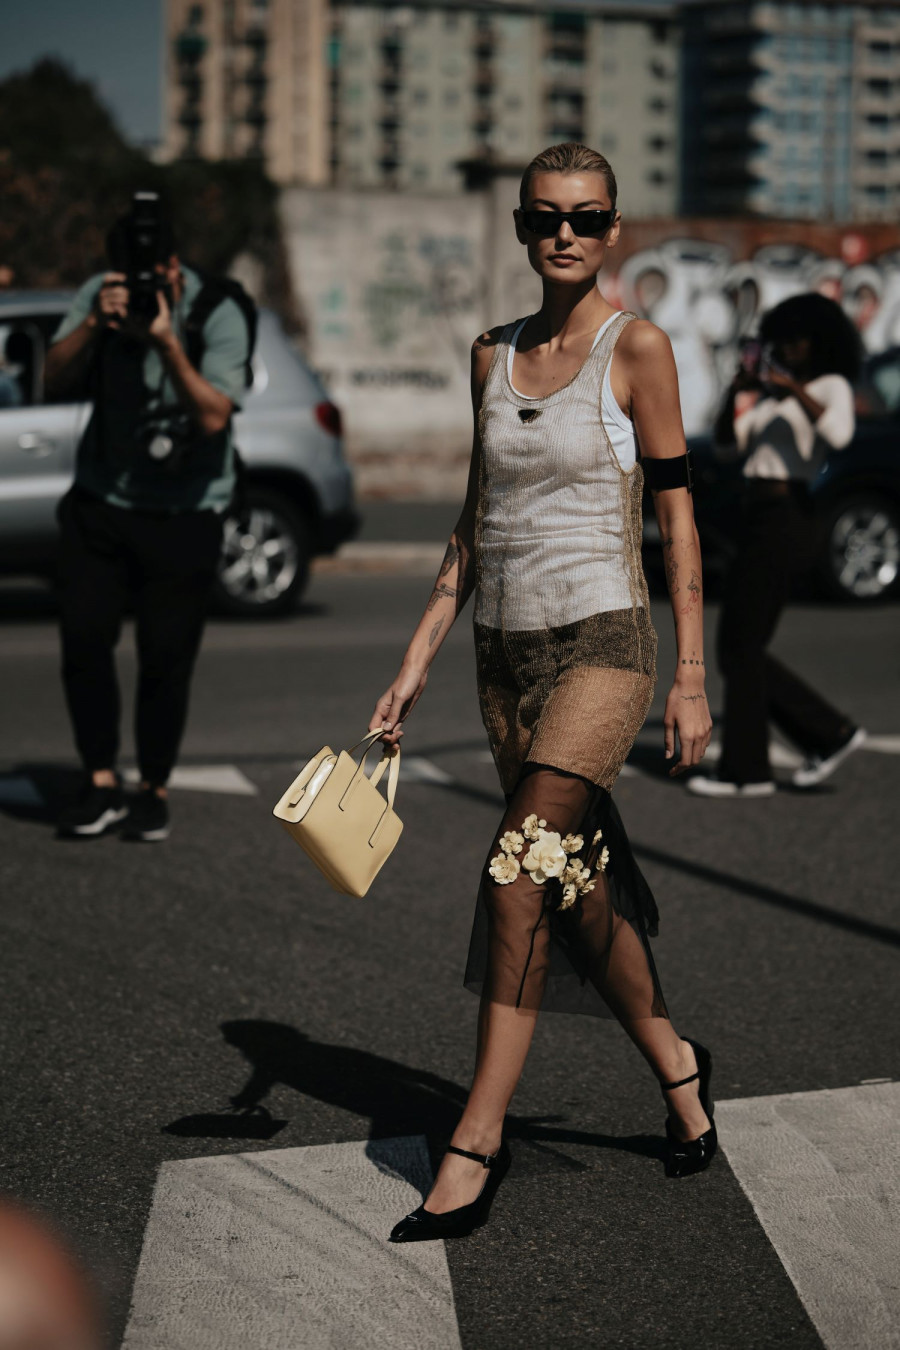 Οι 5 κορυφαίες τάσεις που ανέδειξε το street style στην Εβδομάδα Μόδας του Μιλάνου